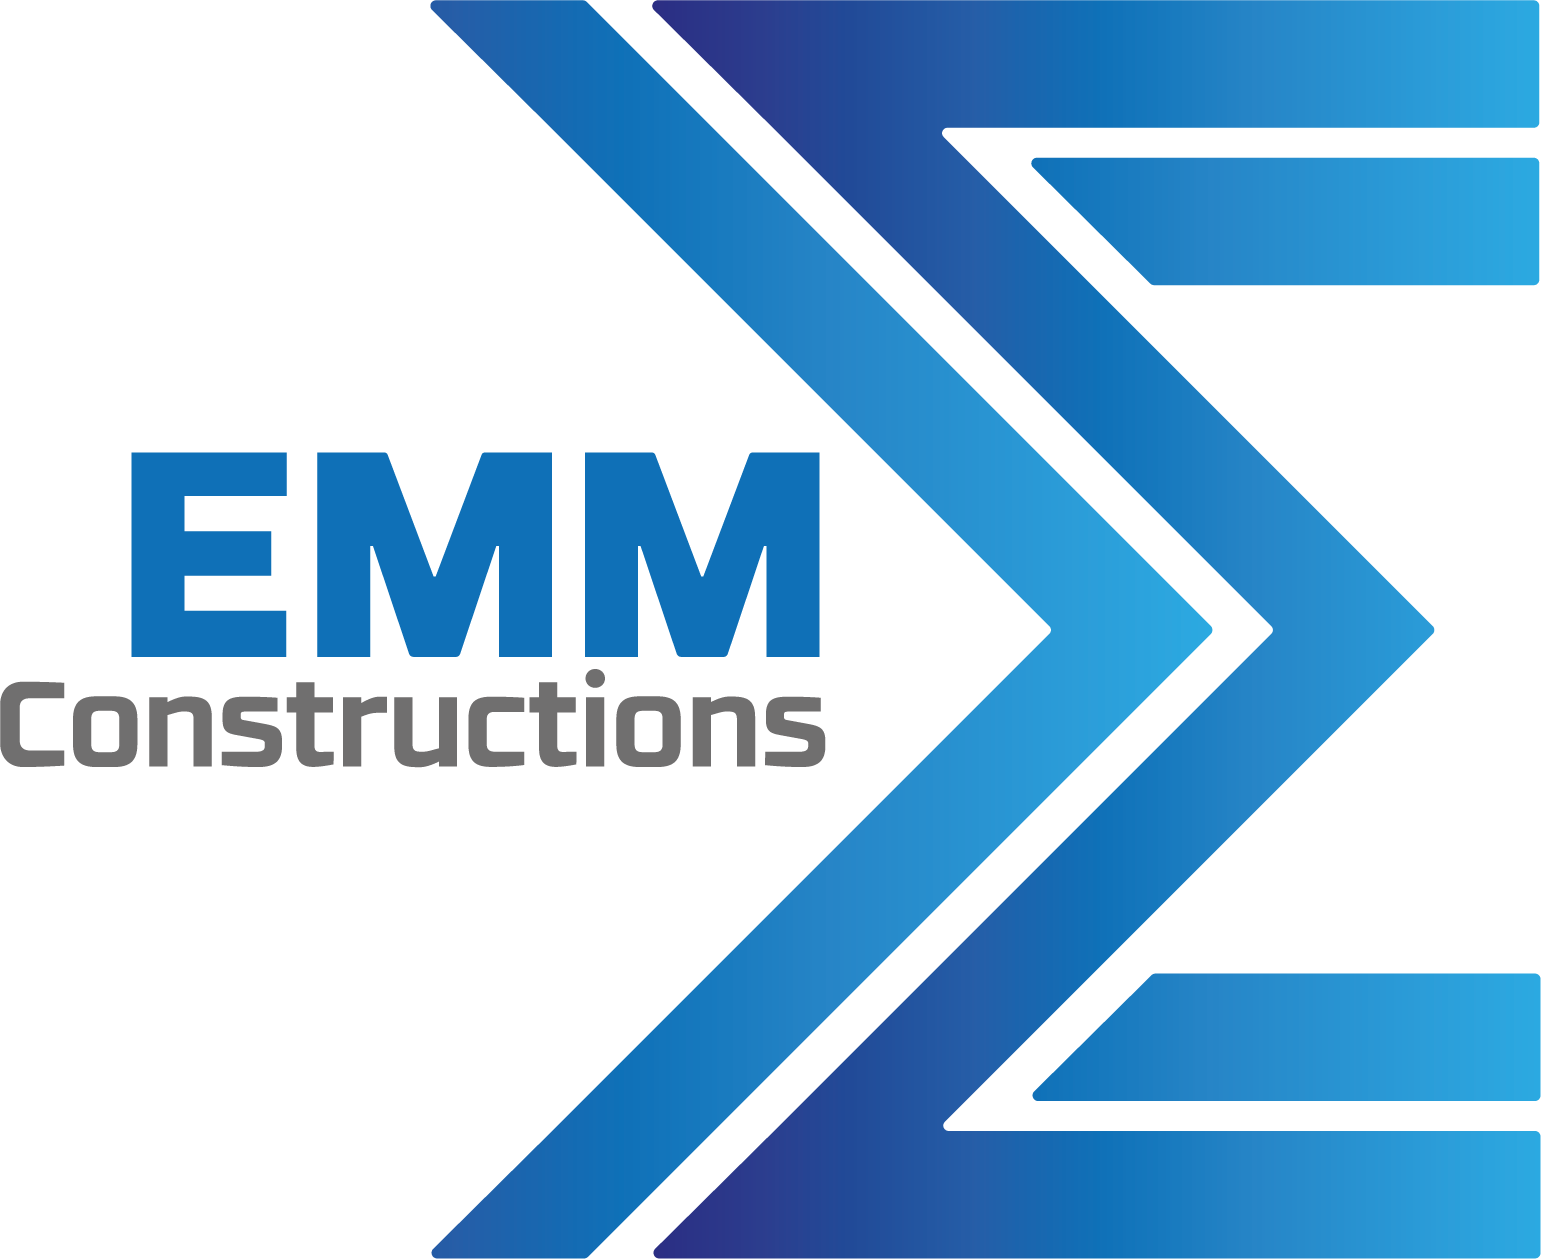 EMM Constructions